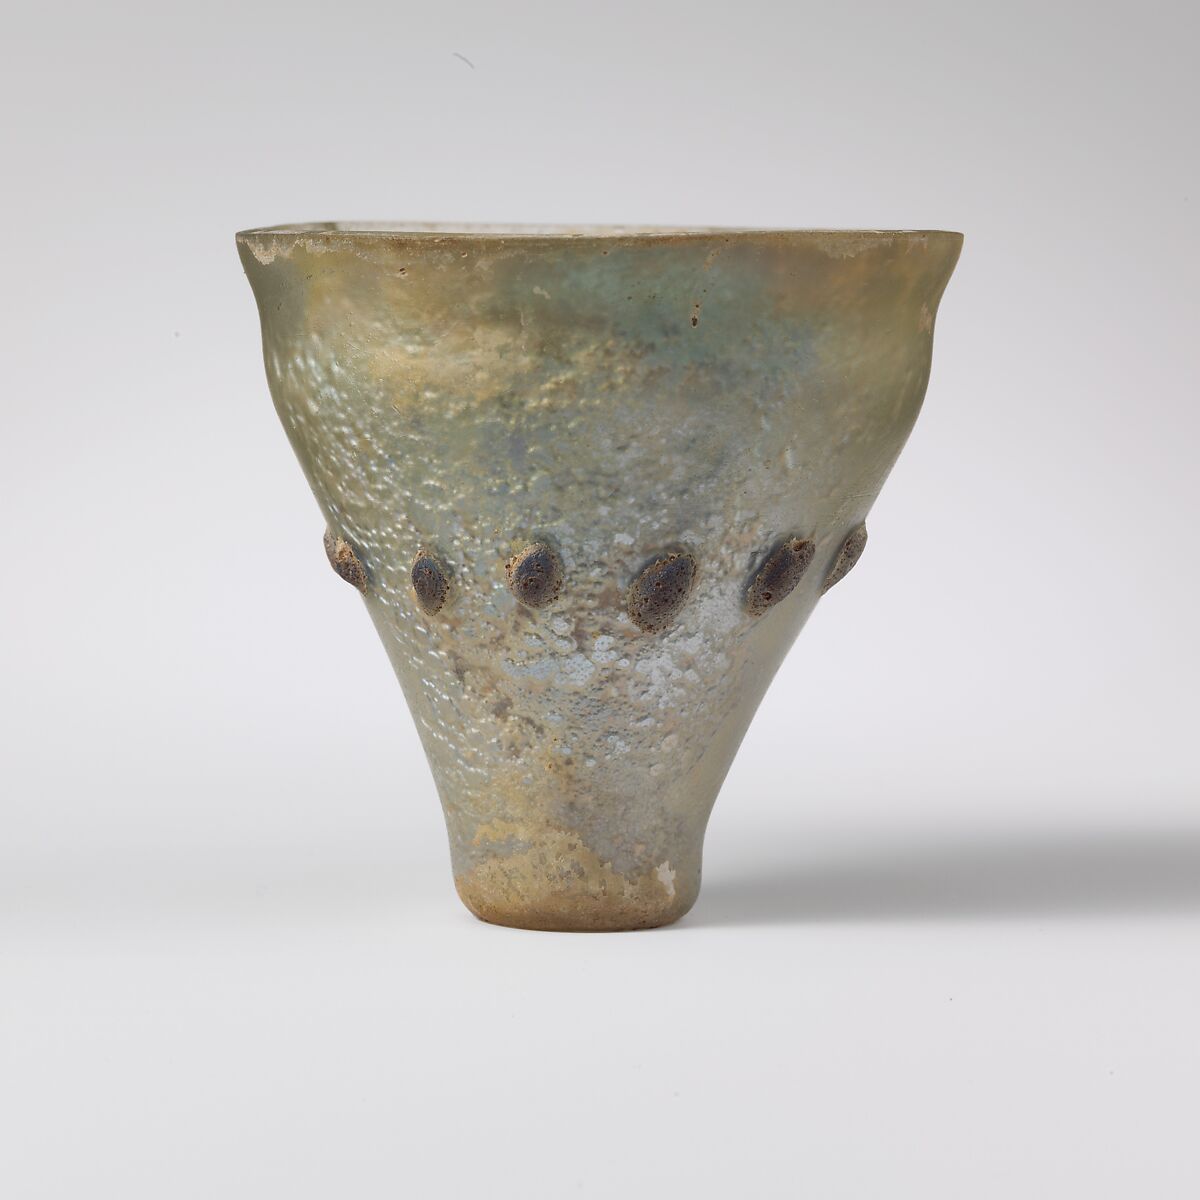 Glass beaker or lamp, Glass, Roman, Syrian 